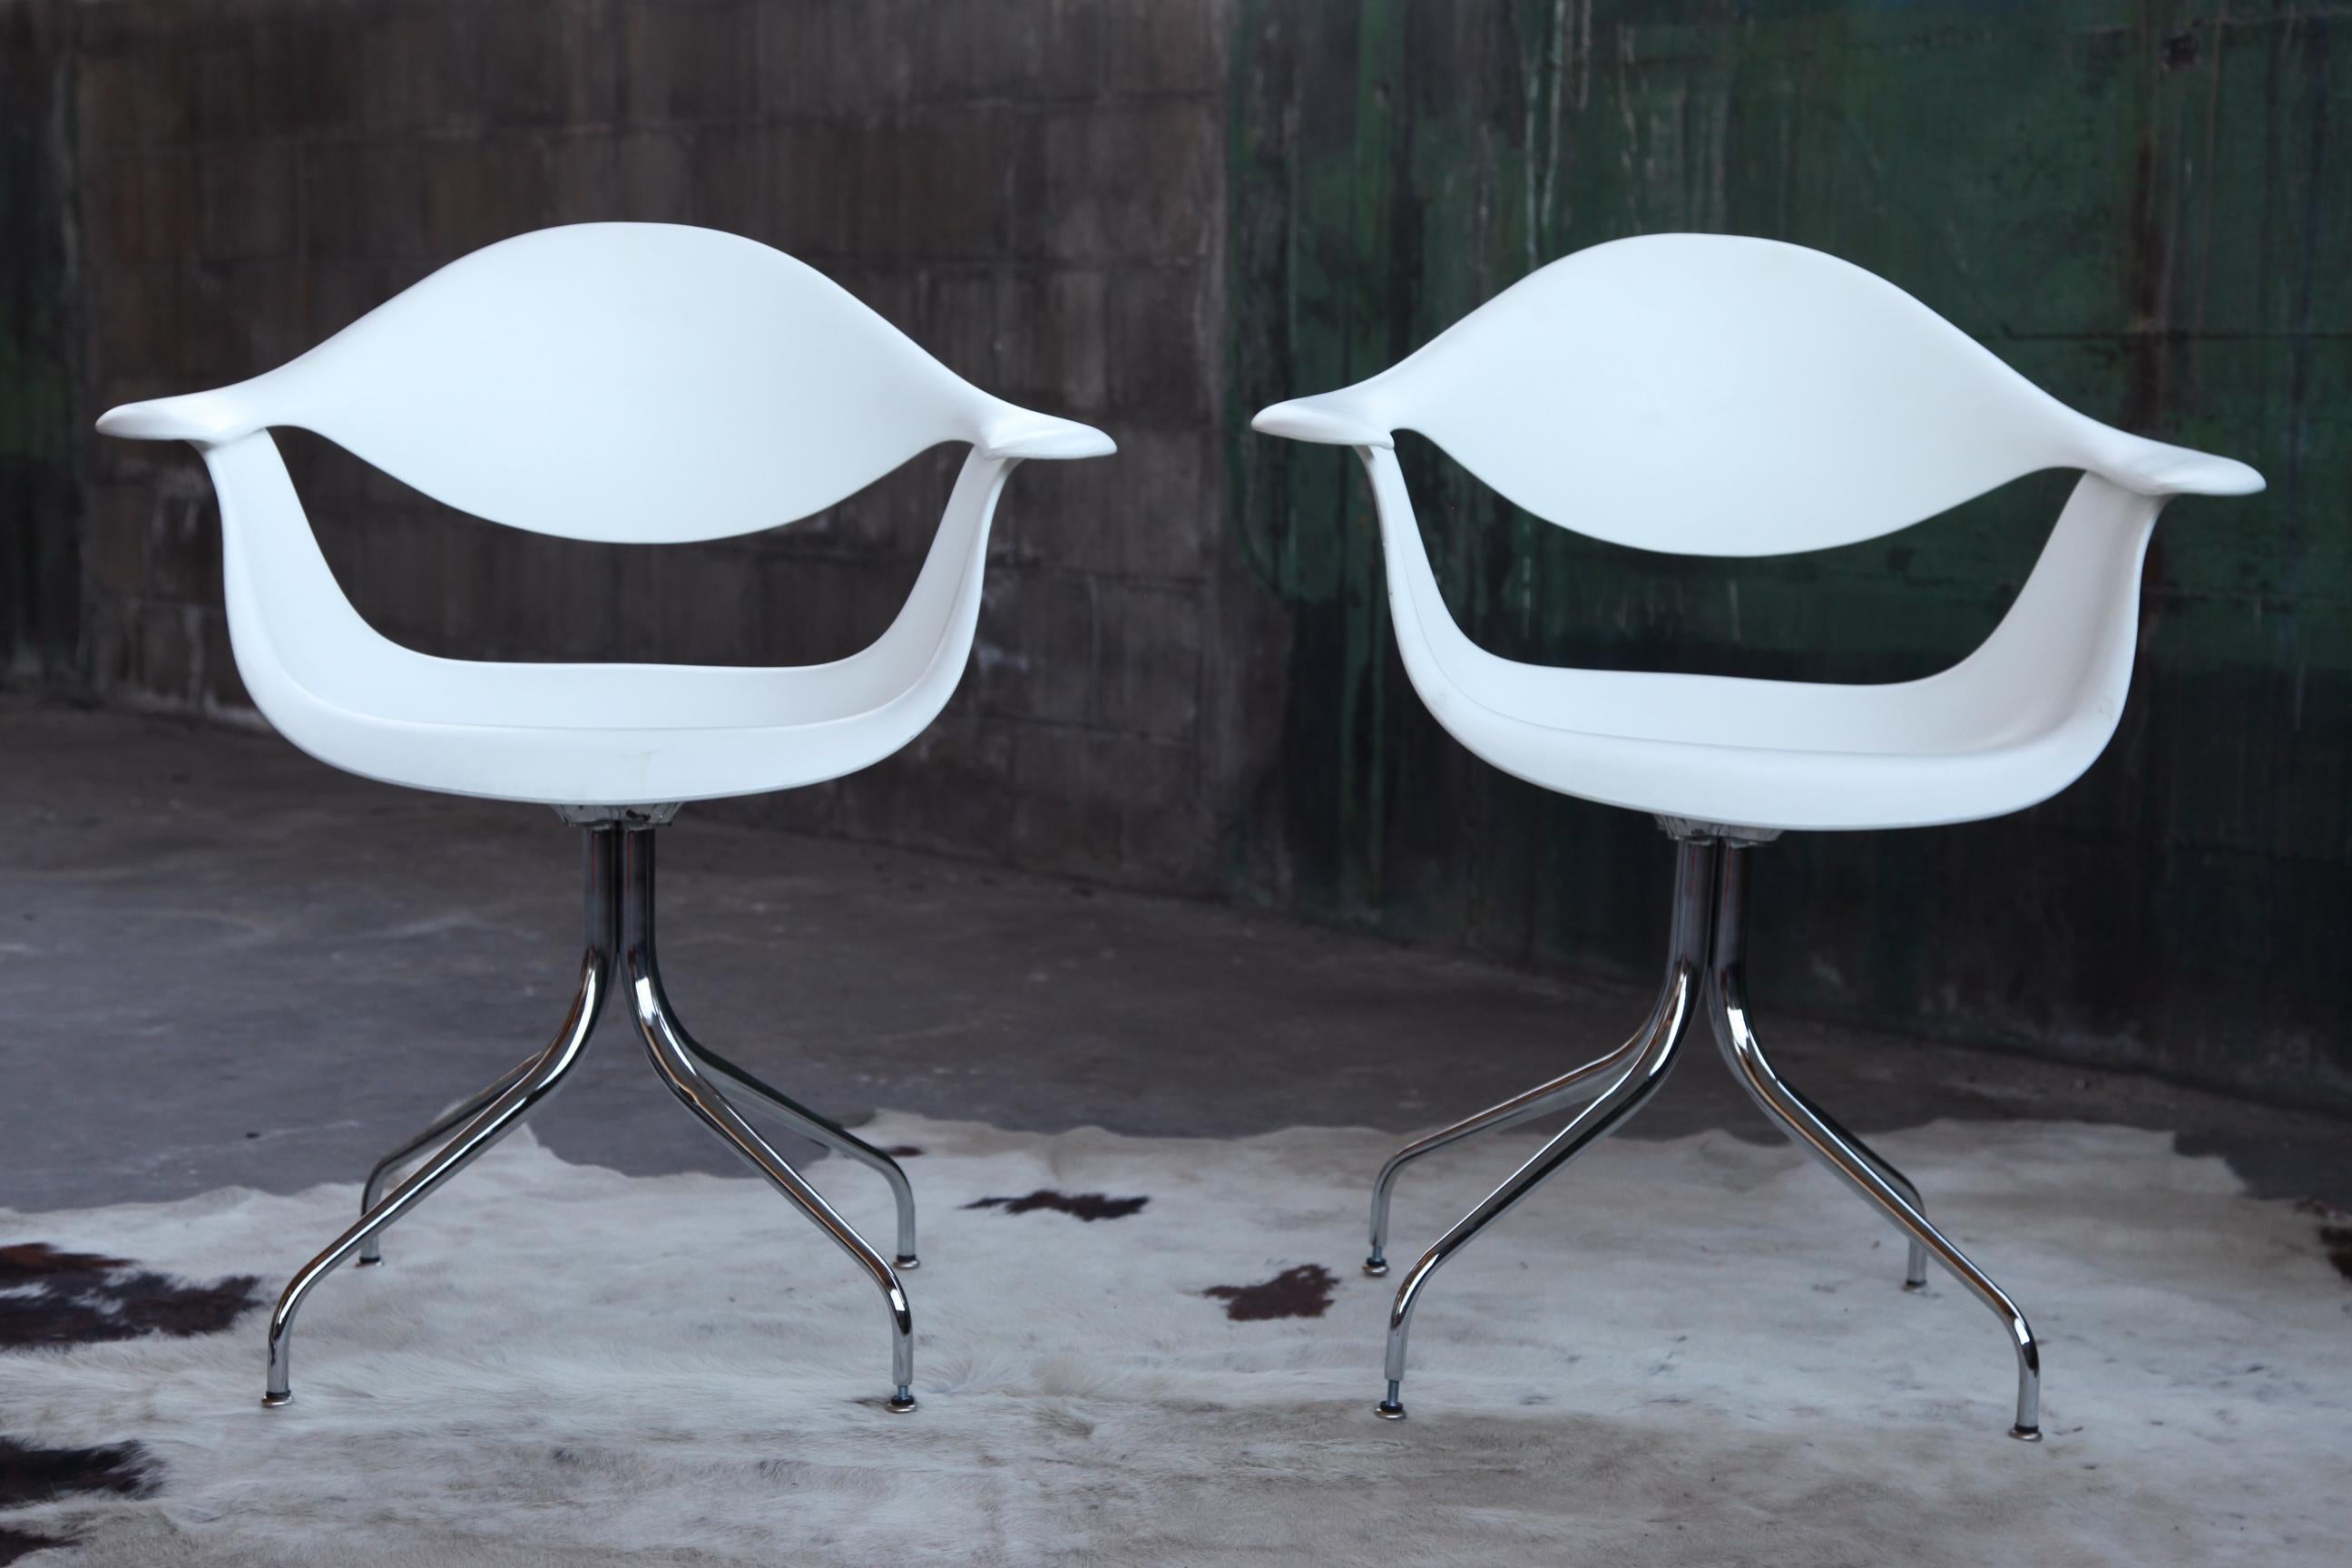 Absolument magnifique et iconique chaise George Nelson Herman Miller Swag en blanc. A l'origine, c.C.C. Cette chaise est une authentique production moderne estampillée Herman Miller de cette incroyable chaise.

Chaise Swag Leg élégante conçue par